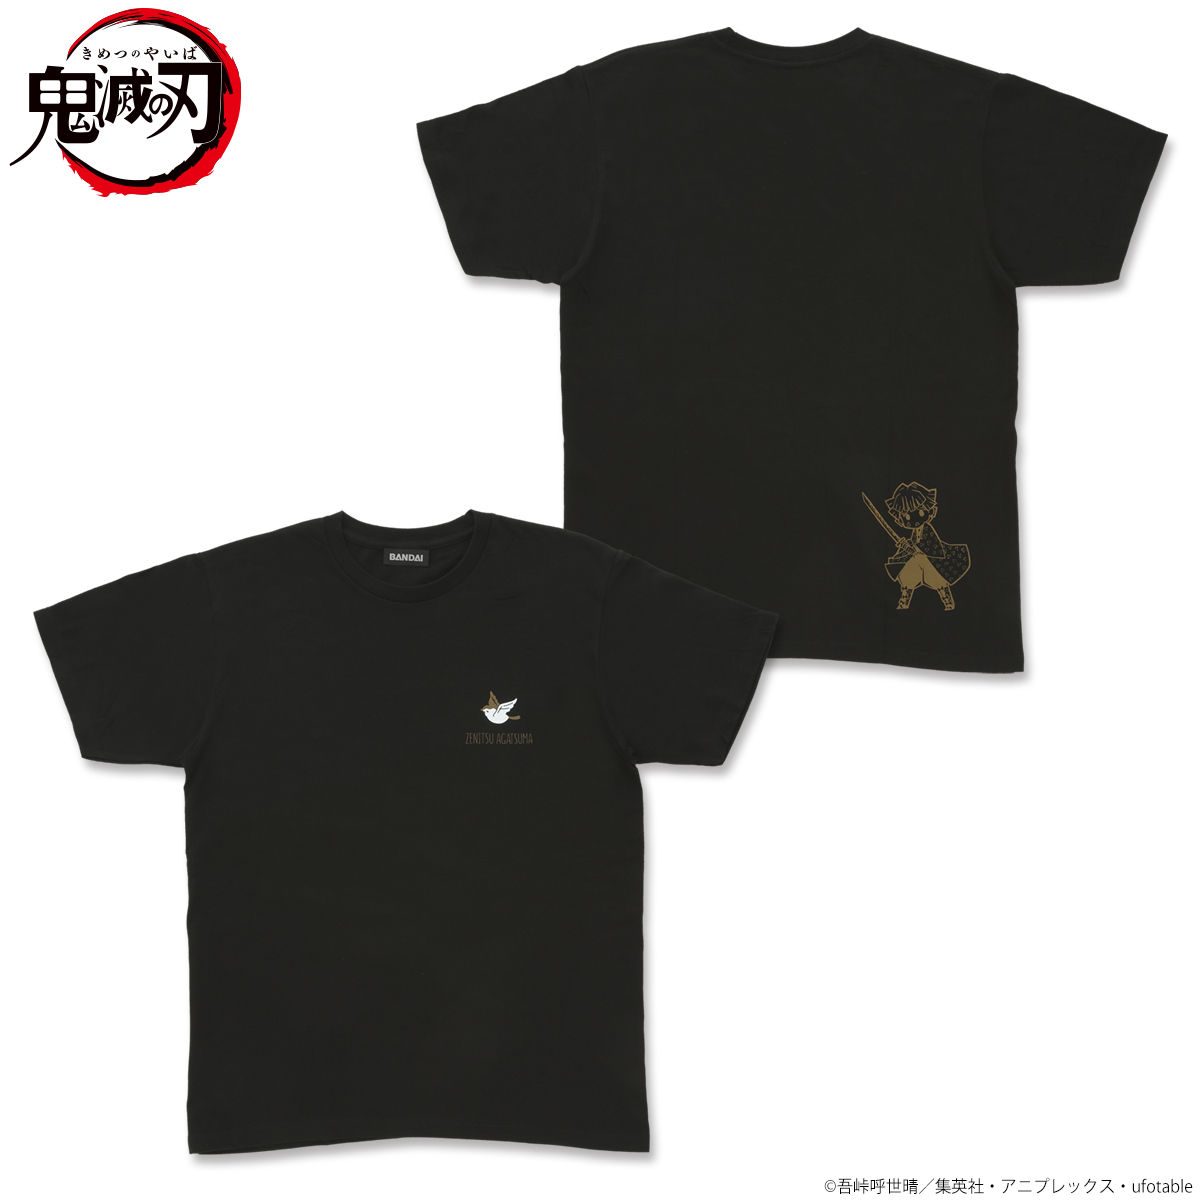 Zenitsu Agatsuma - Kimetsu no Yaiba T-Shirt